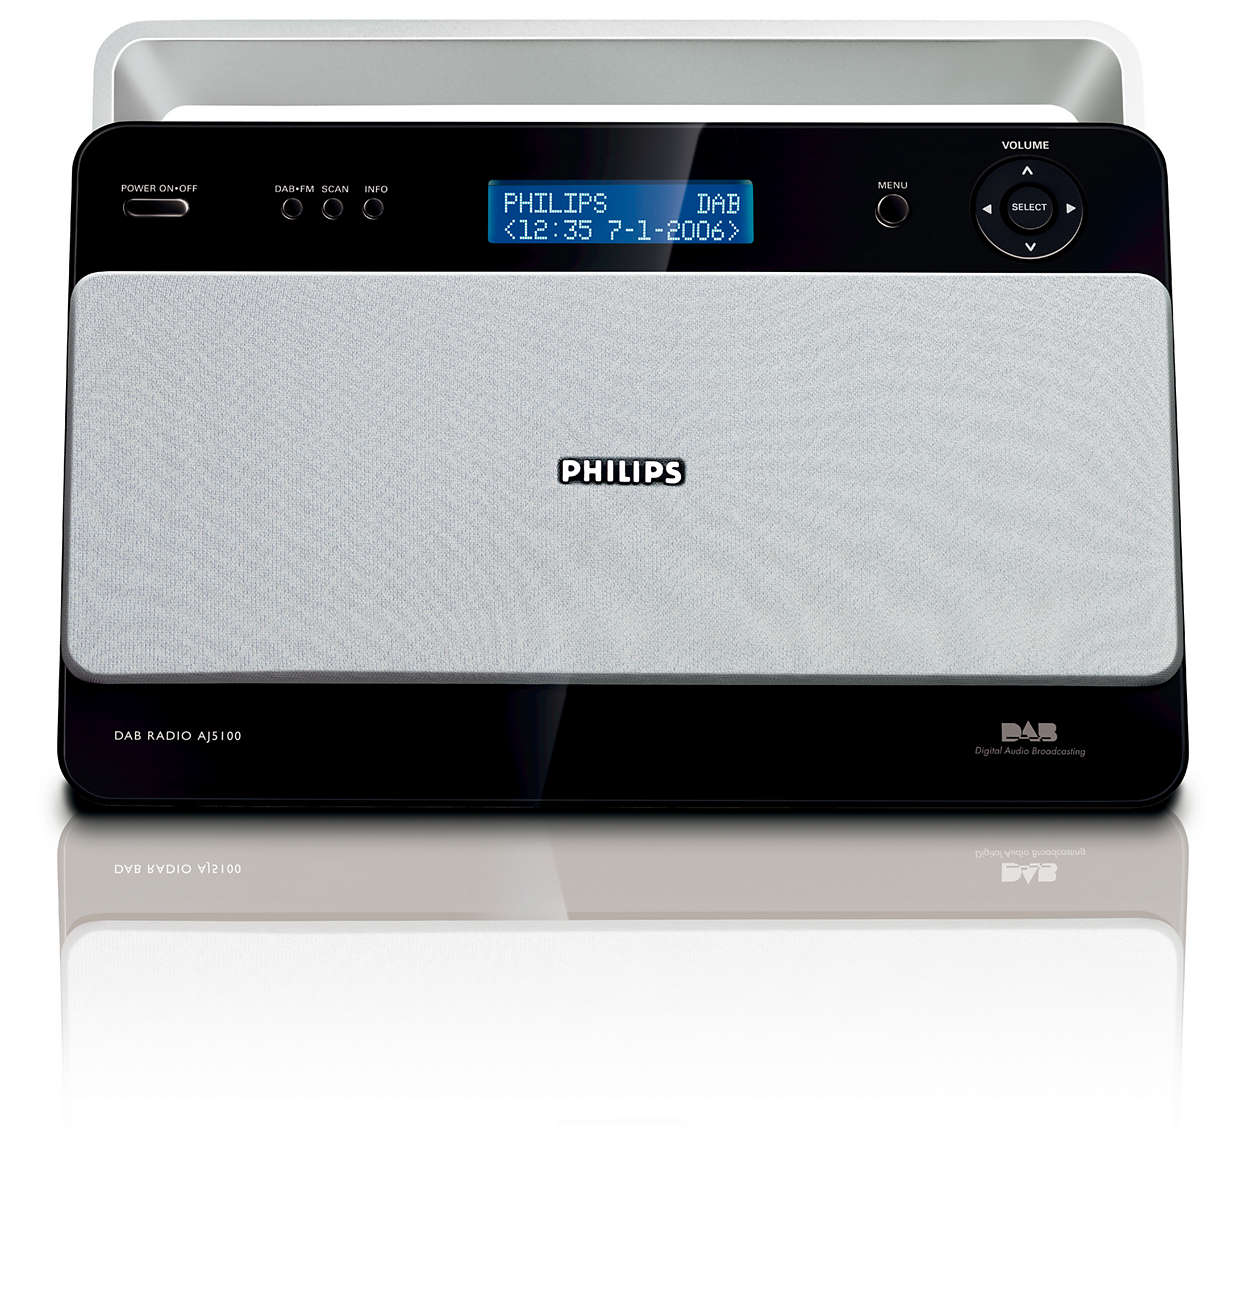 Digital radio with crystal clear sound quality